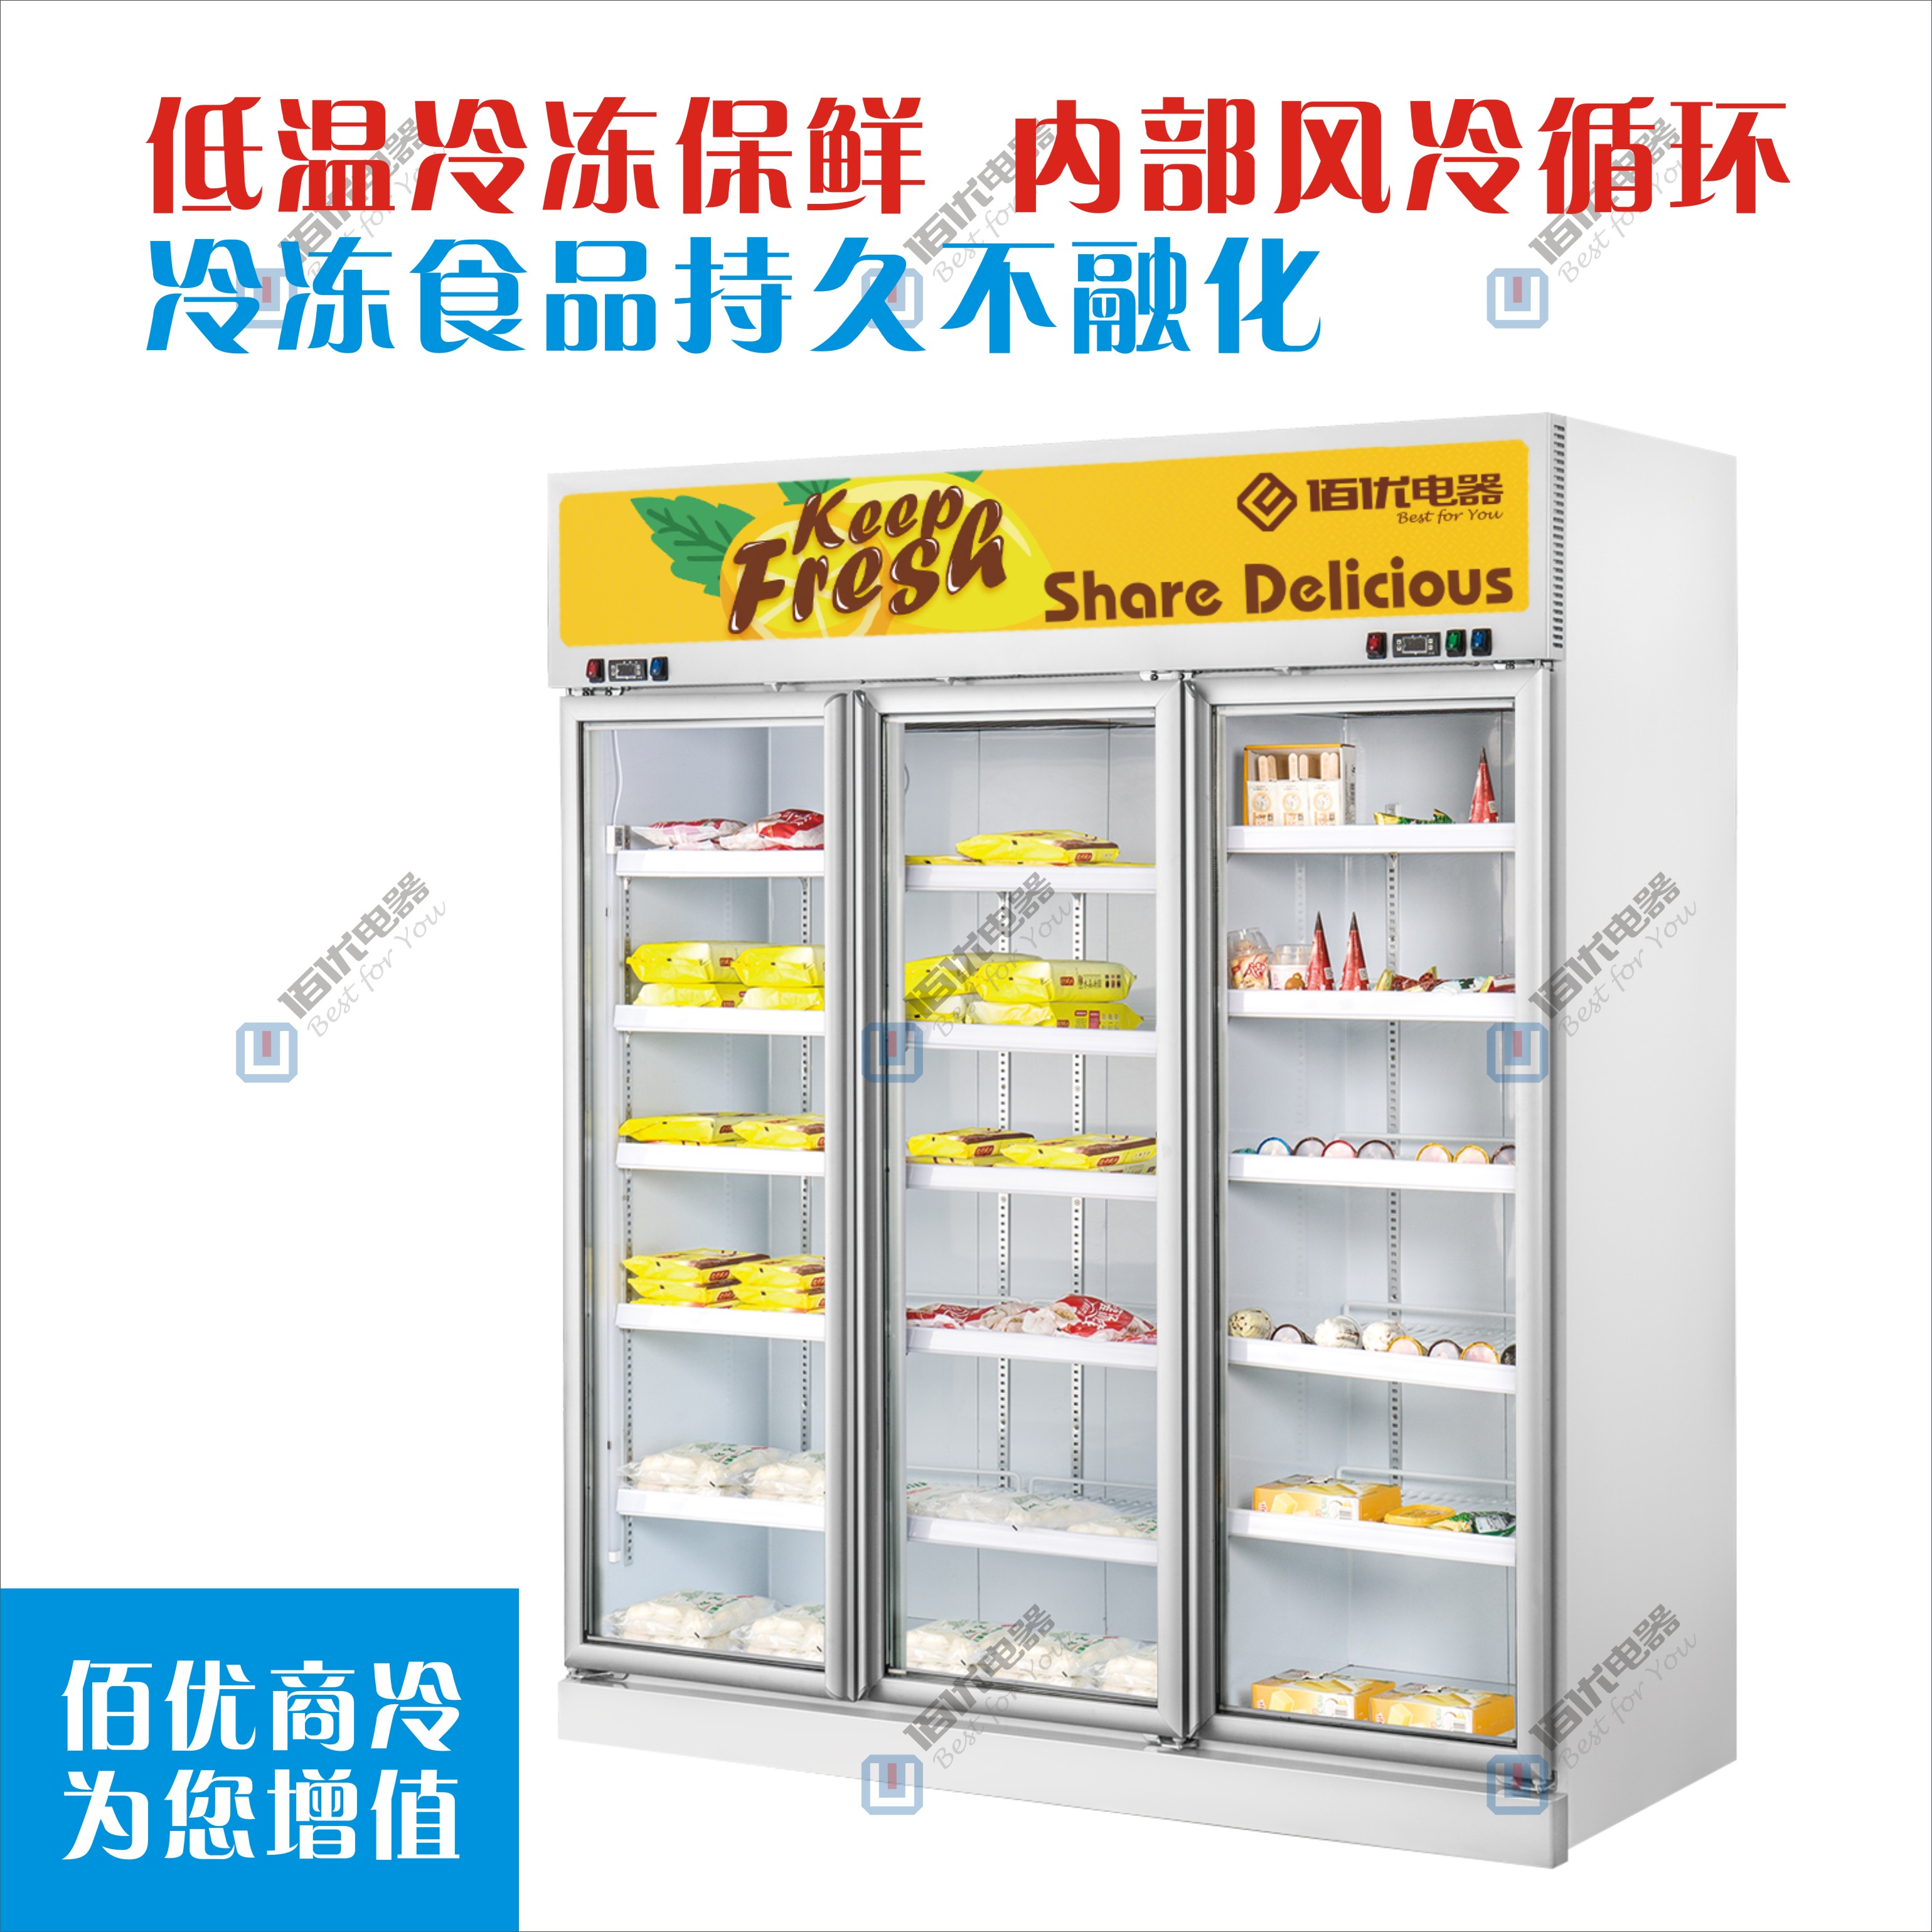 冷冻食品展示柜，超市冷藏展示冰柜，立式食品冰鲜展示柜图片